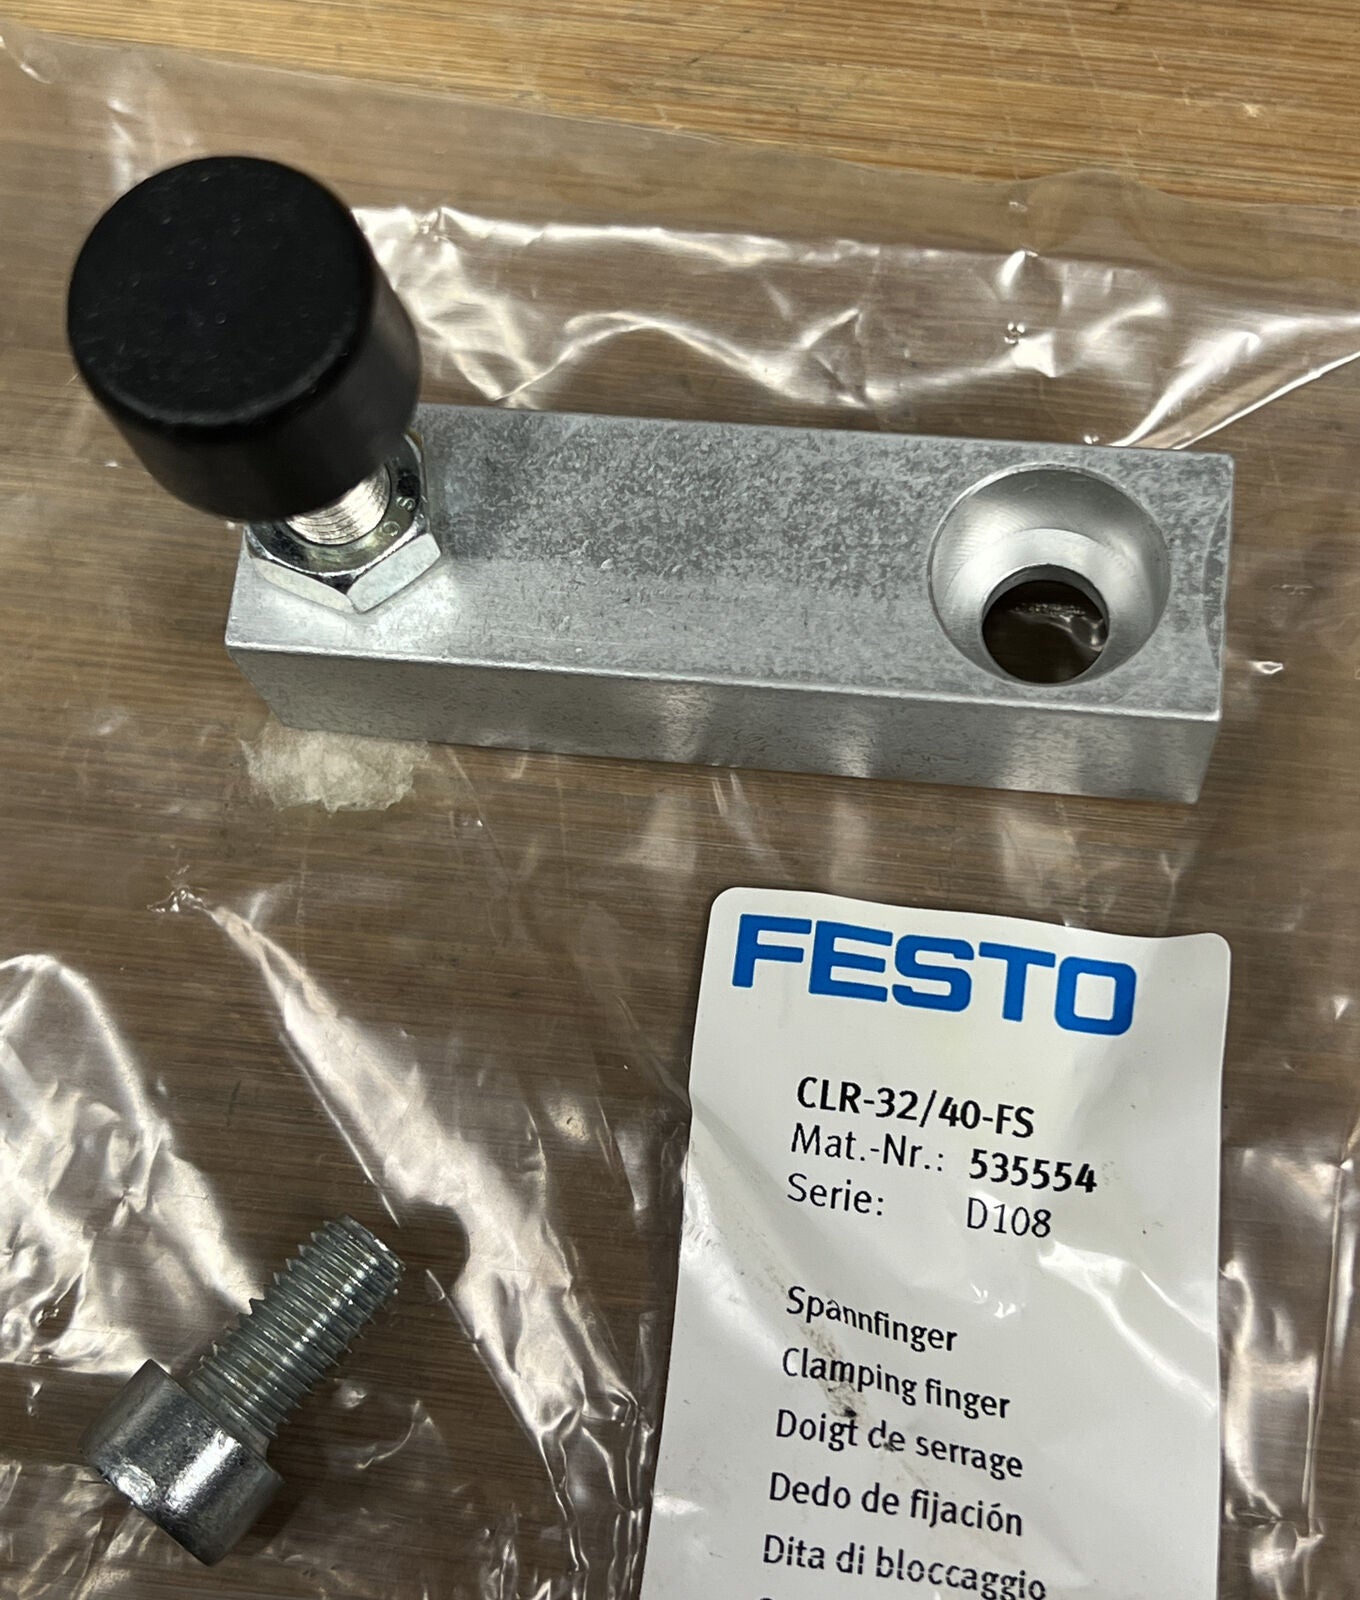 Festo CLR-32/40-FS / 535554 New Clamping Finger (YE100)